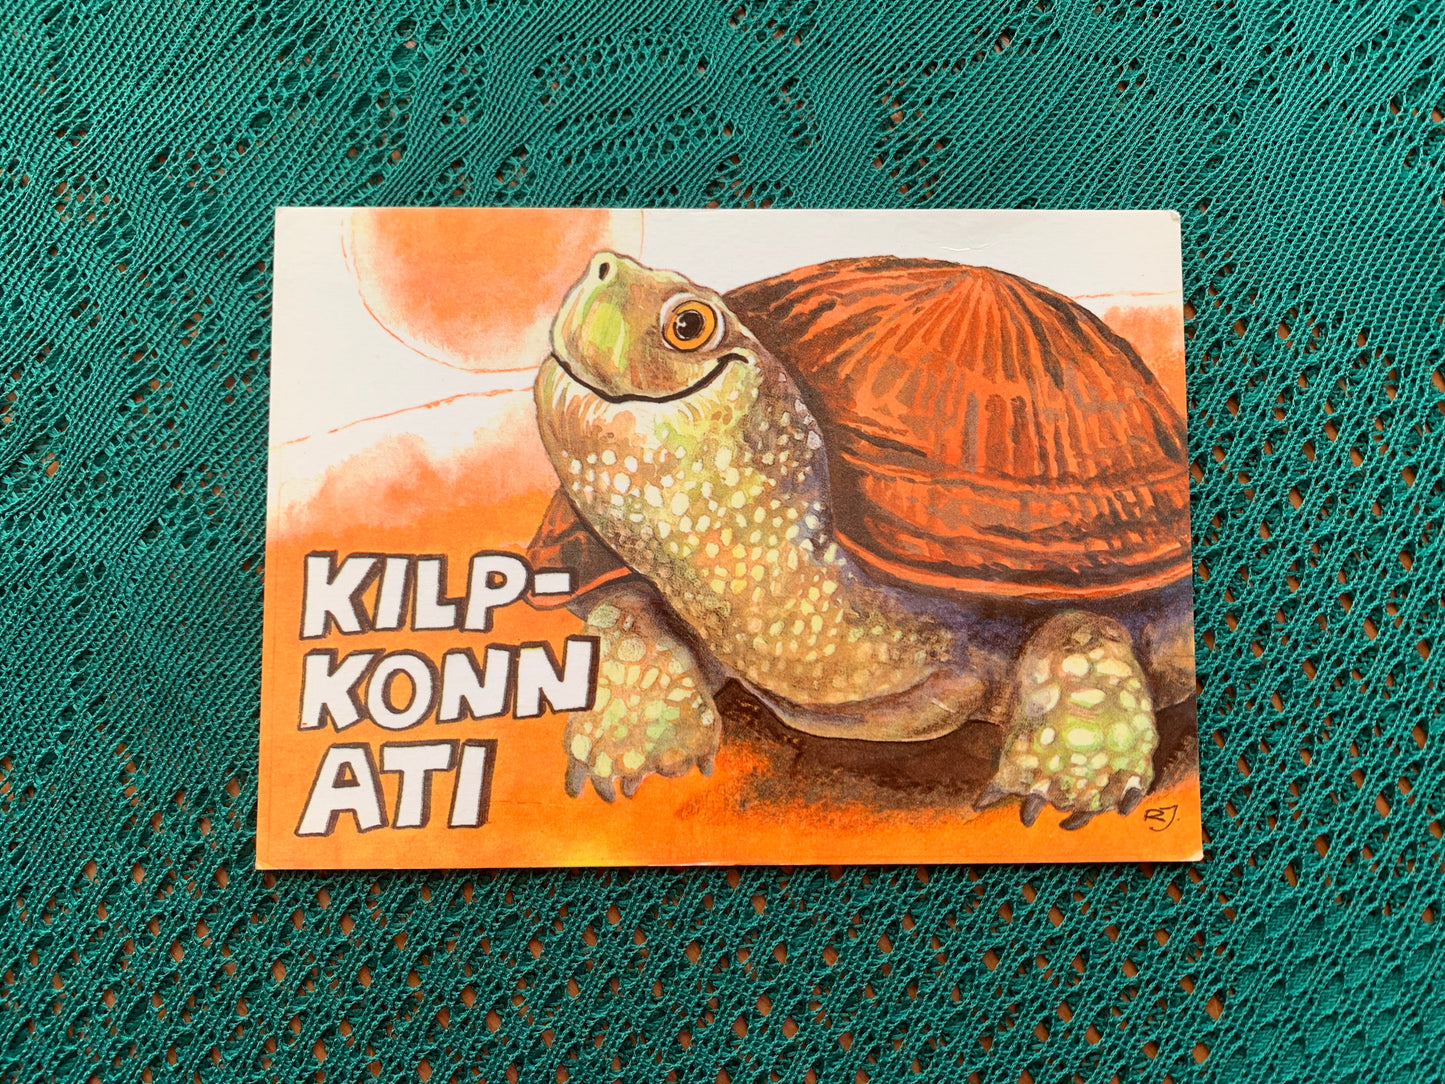 Estonian art postcard - Artist Raivo Järvi - Turtle Ati - 1981 - unused